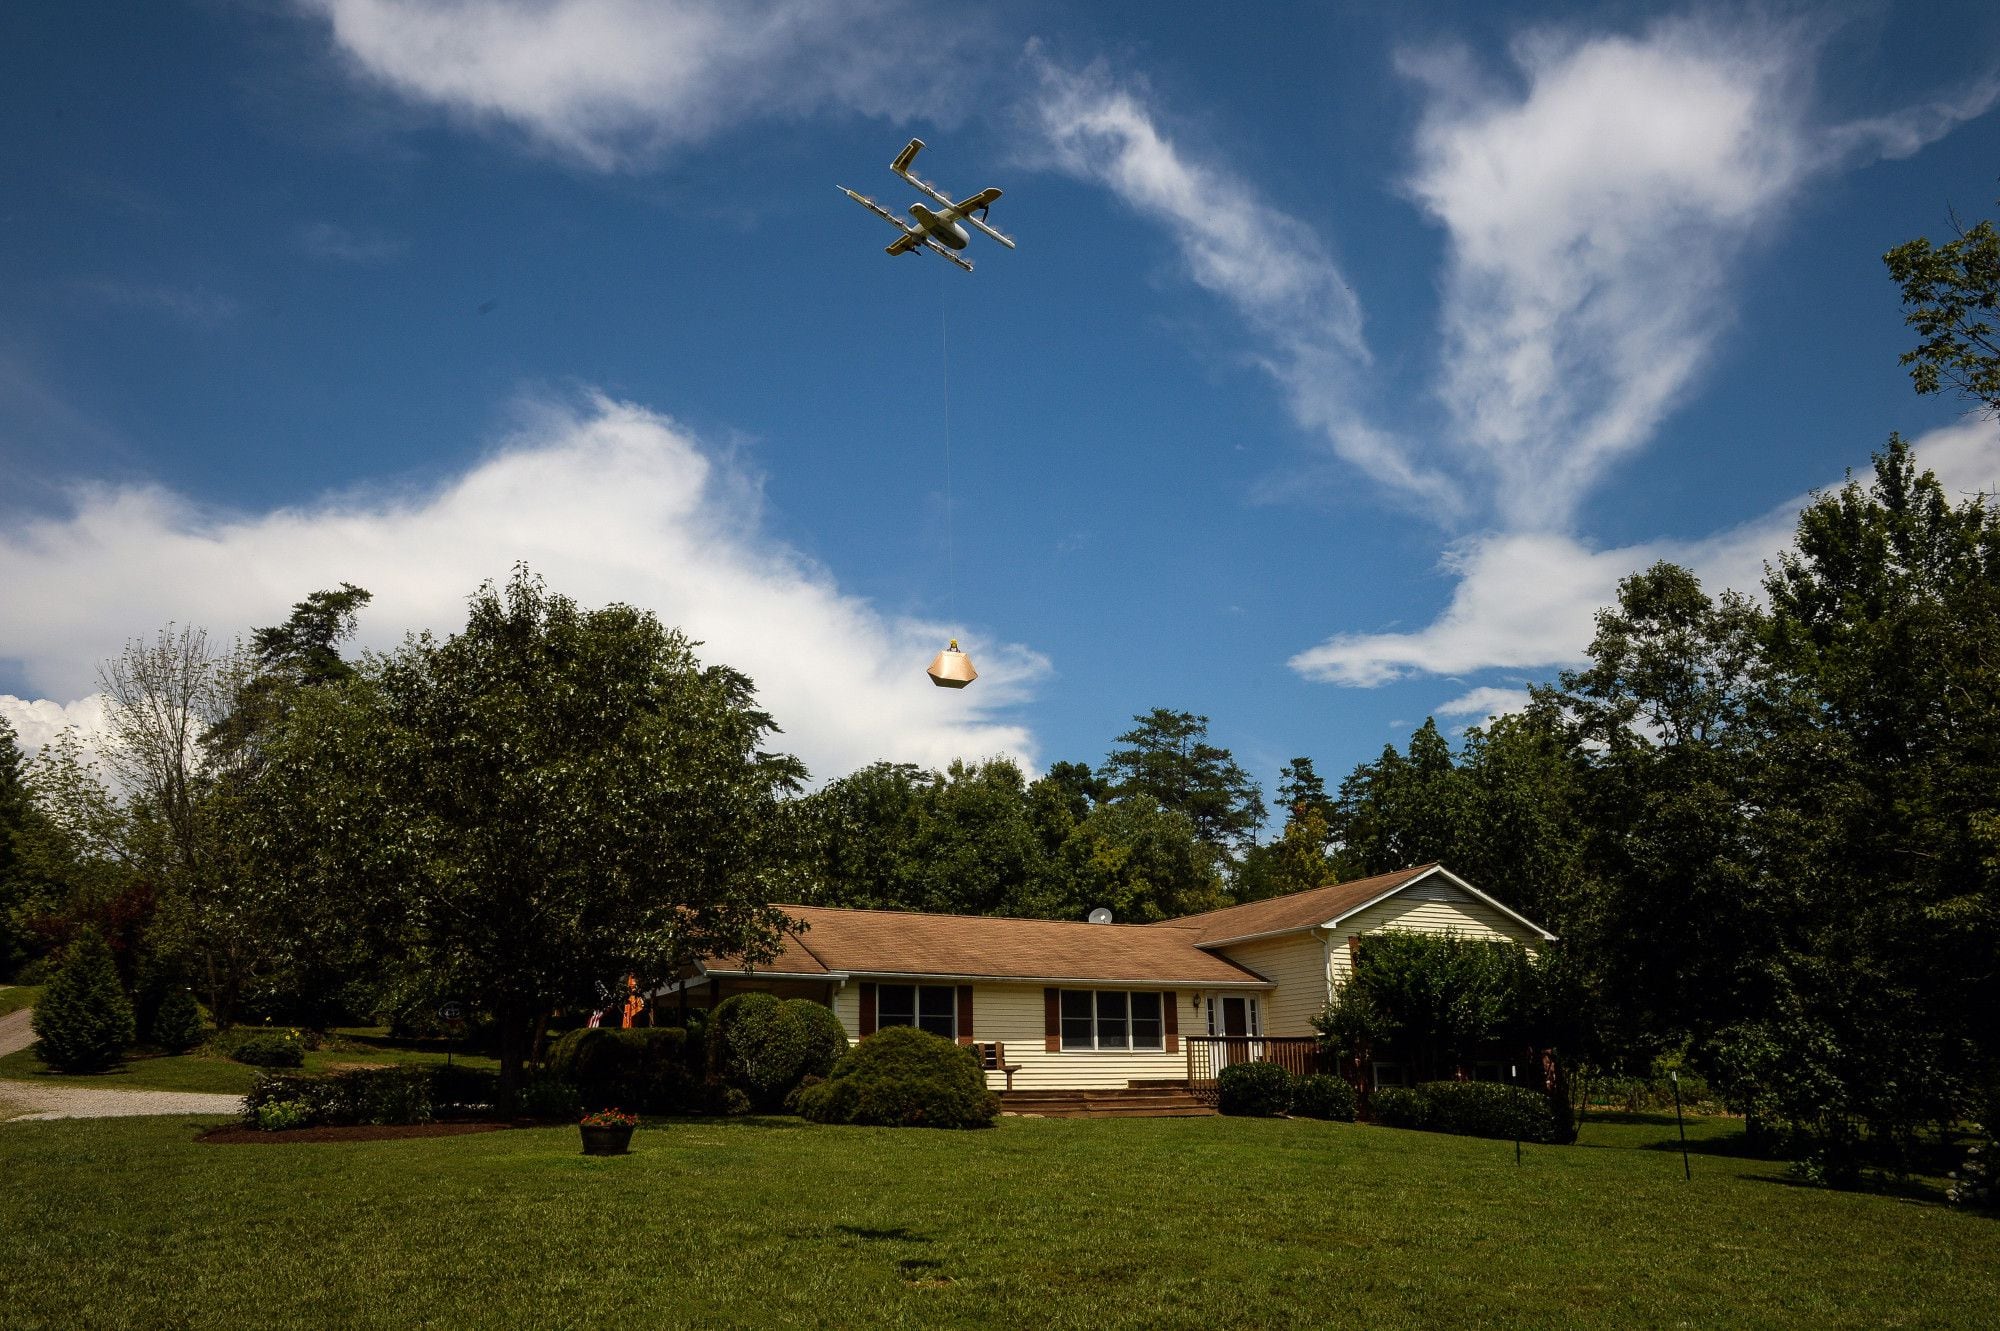 Wing se prepara en la industria de entregas con la implementación de drones delivery. (Charles Mostoller/Bloomberg)